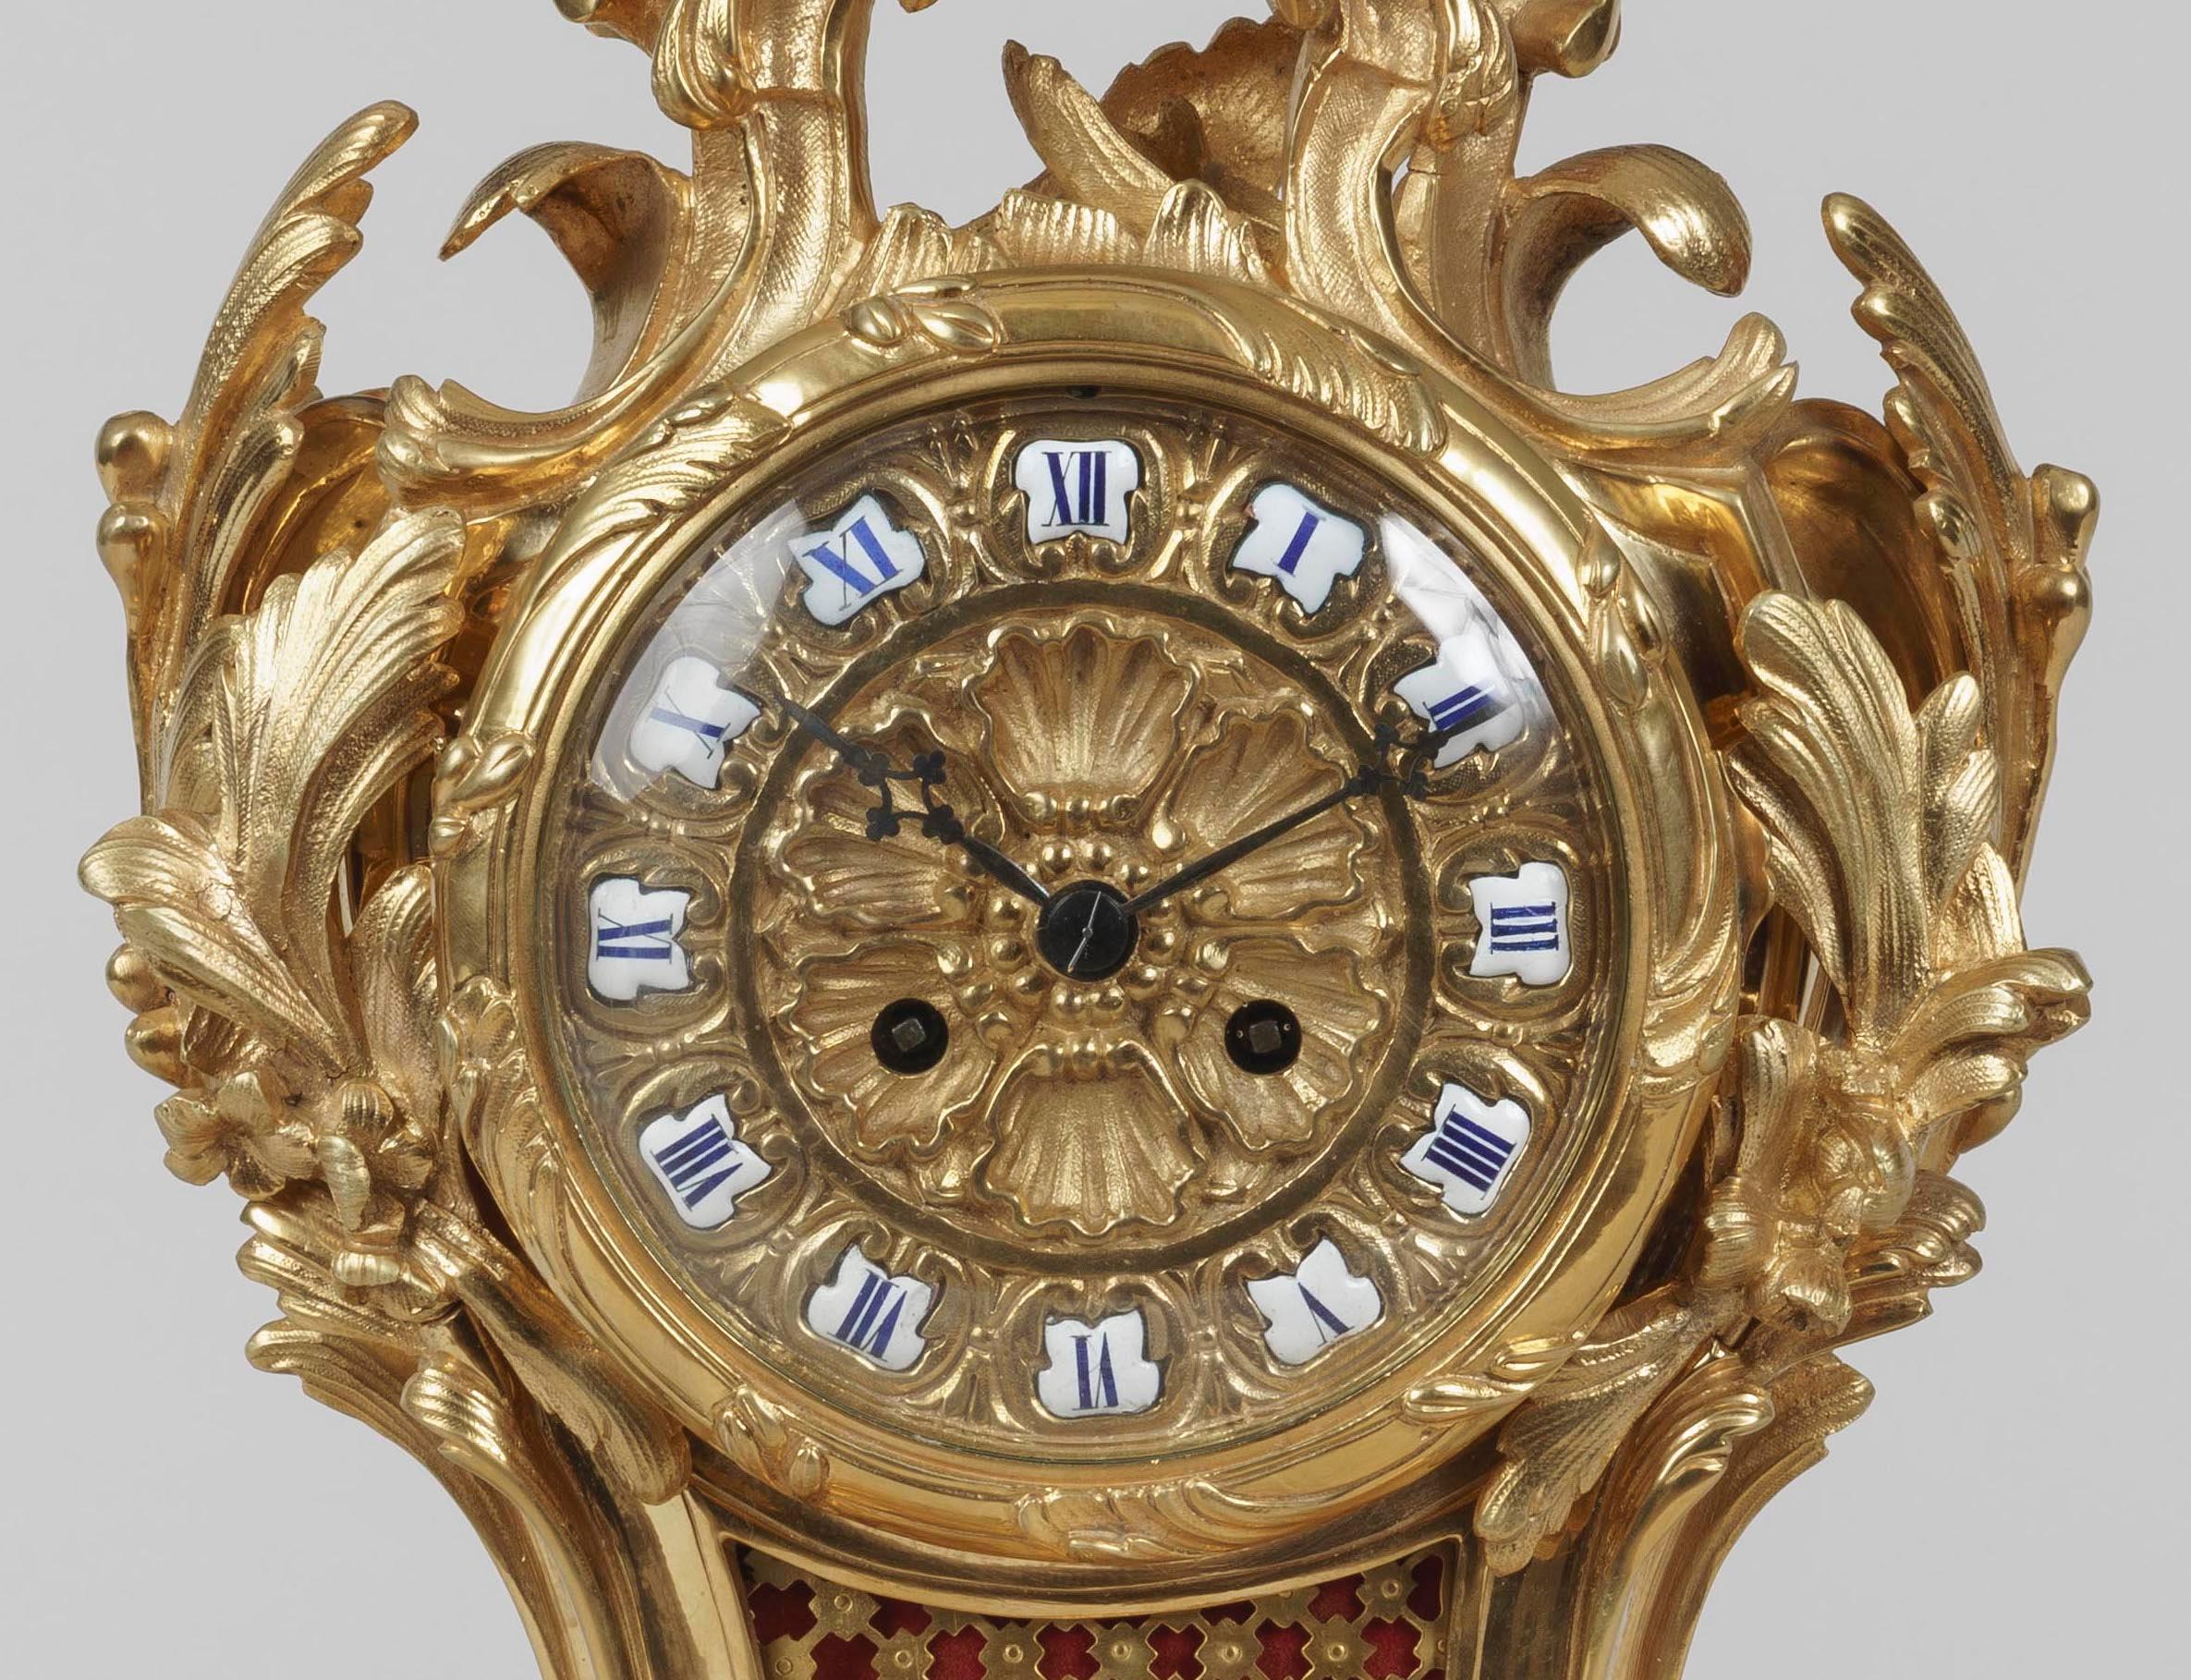 Une horloge de manteau élégante
A la manière de Louis XV

La pendule et son socle sont exécutés en bronze doré dans un style rococo dynamique, s'élevant d'un feuillage en volutes, le cadran en forme de fleur et les heures marquées par des chiffres